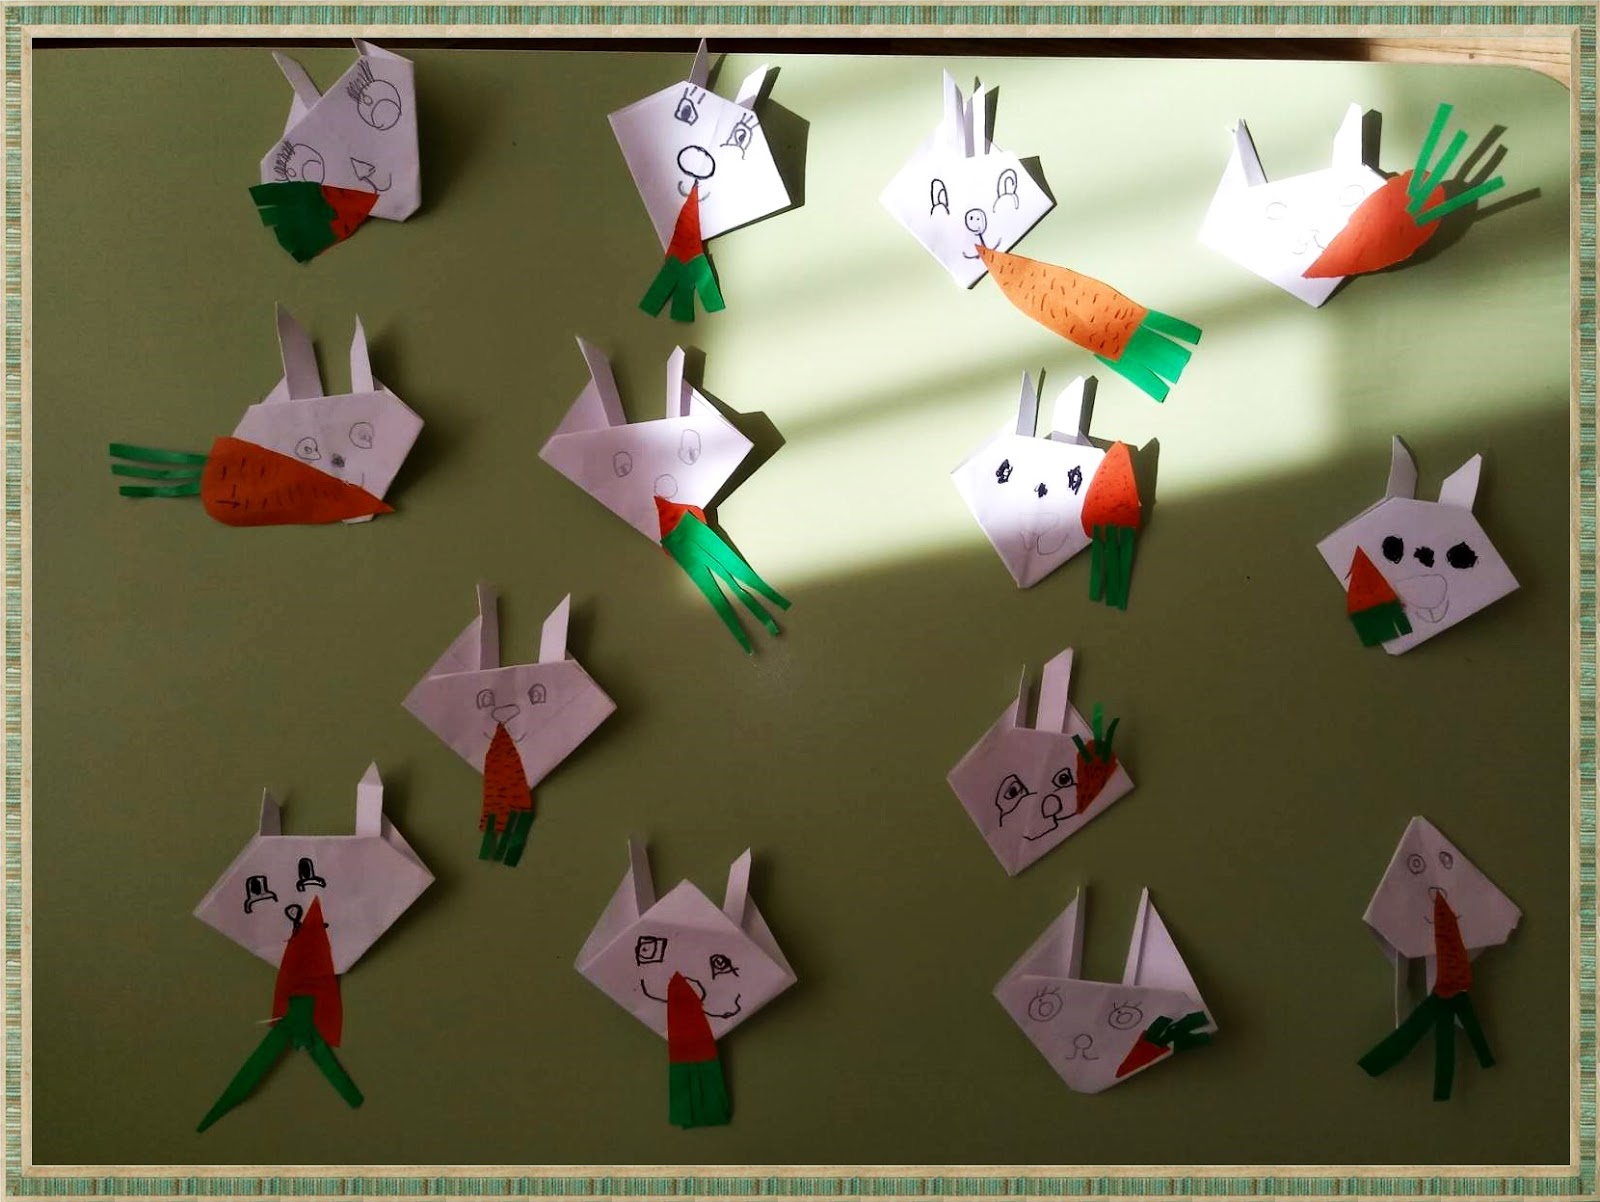 Конспекты оригами подготовительная группа. Конструирование избумагив подготовительной груп. Конструирование из бумаги в подготовительной группе. Конструирование из бумаги в старшей группе. Оригамт встаршей группе.